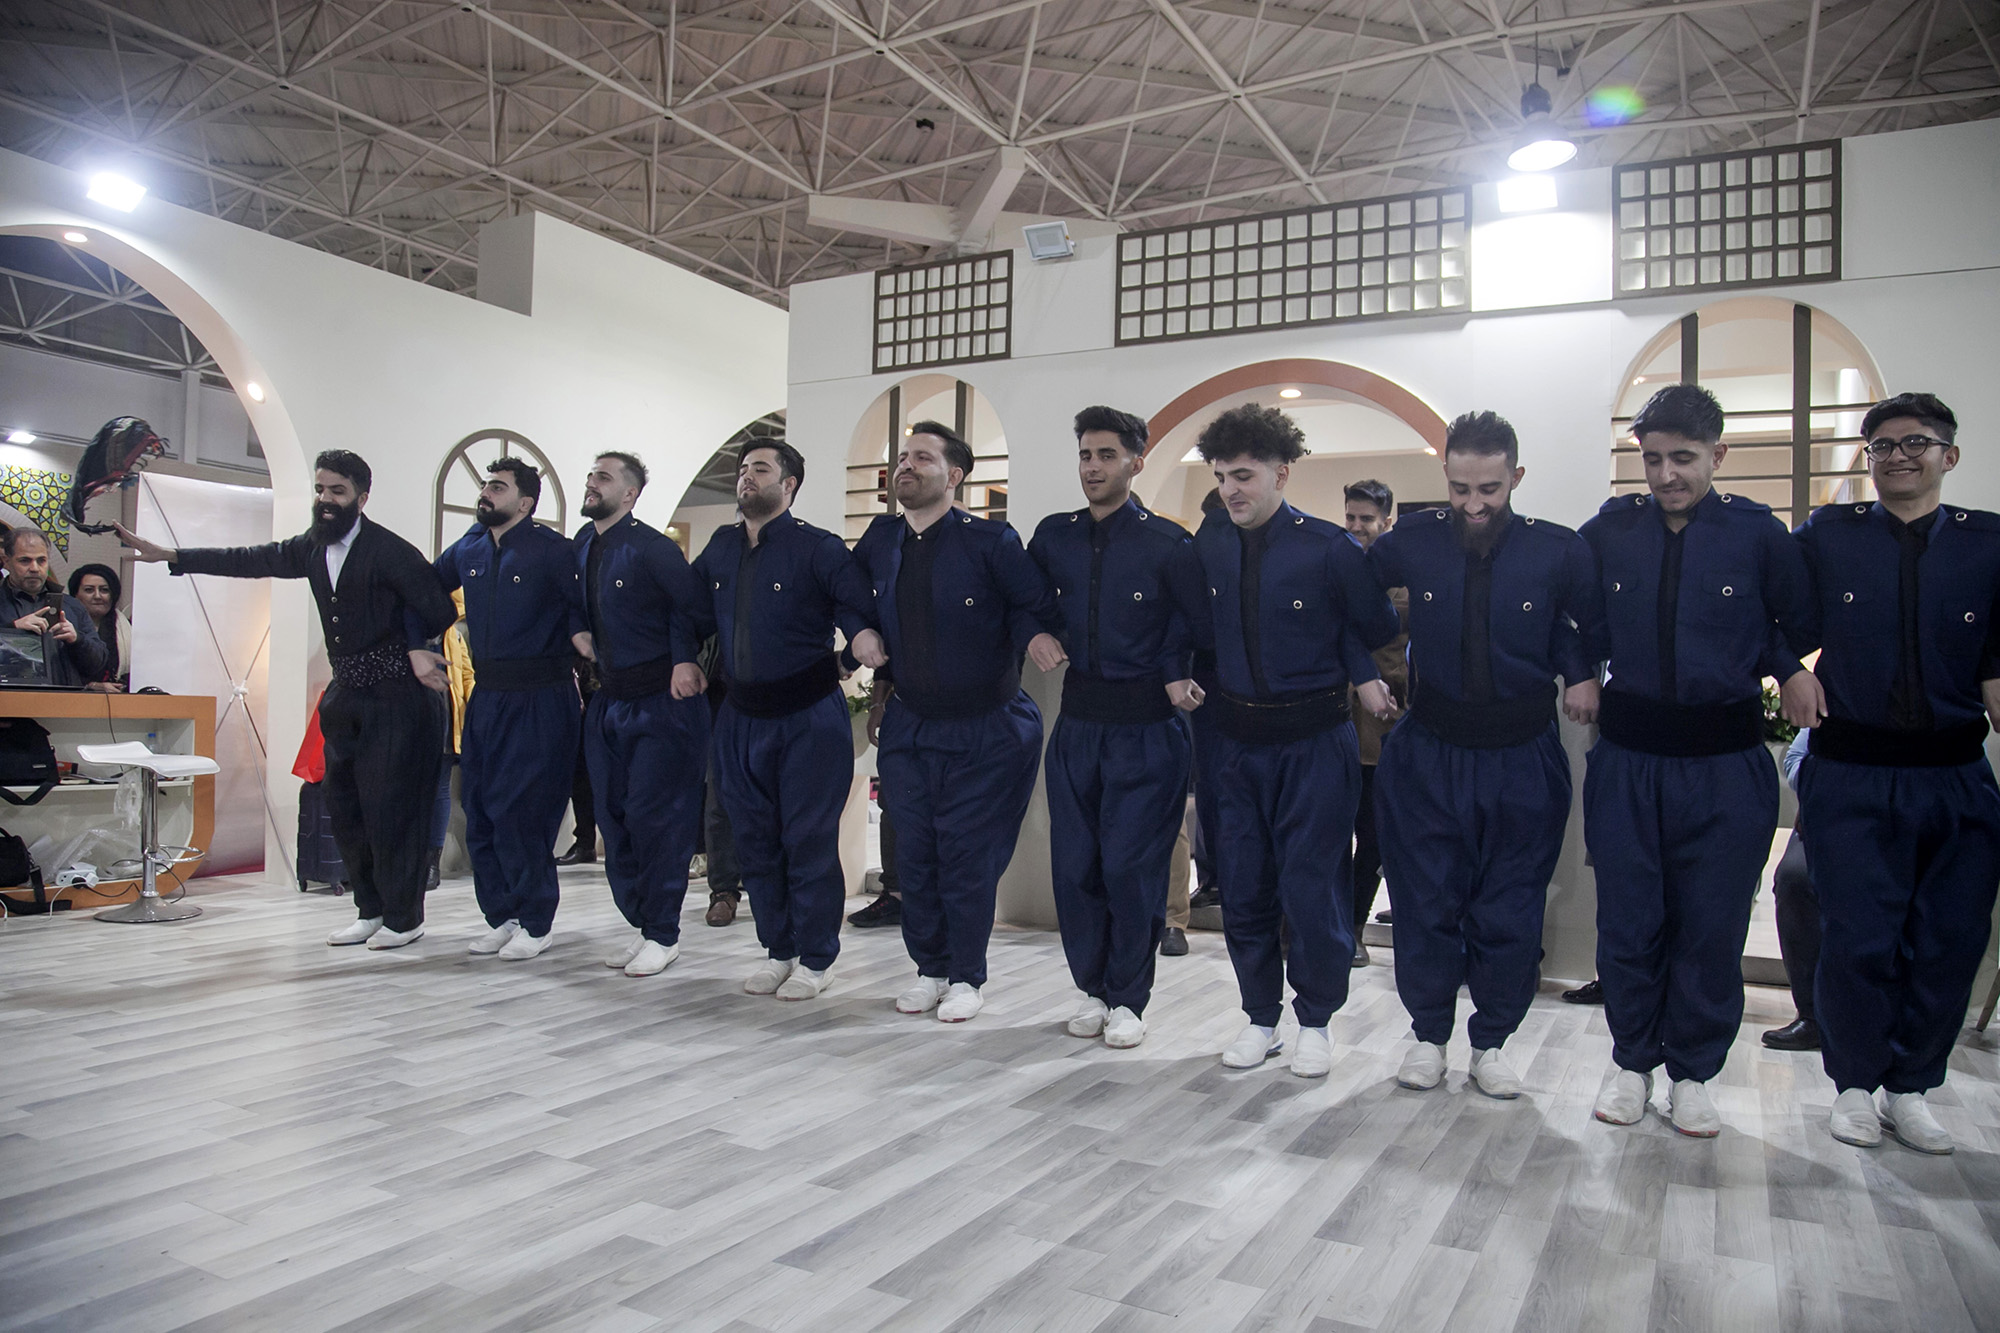 اجرای مراسم آئینی اتحاد اقوام ایرانی در غرفه استان کرمانشاه